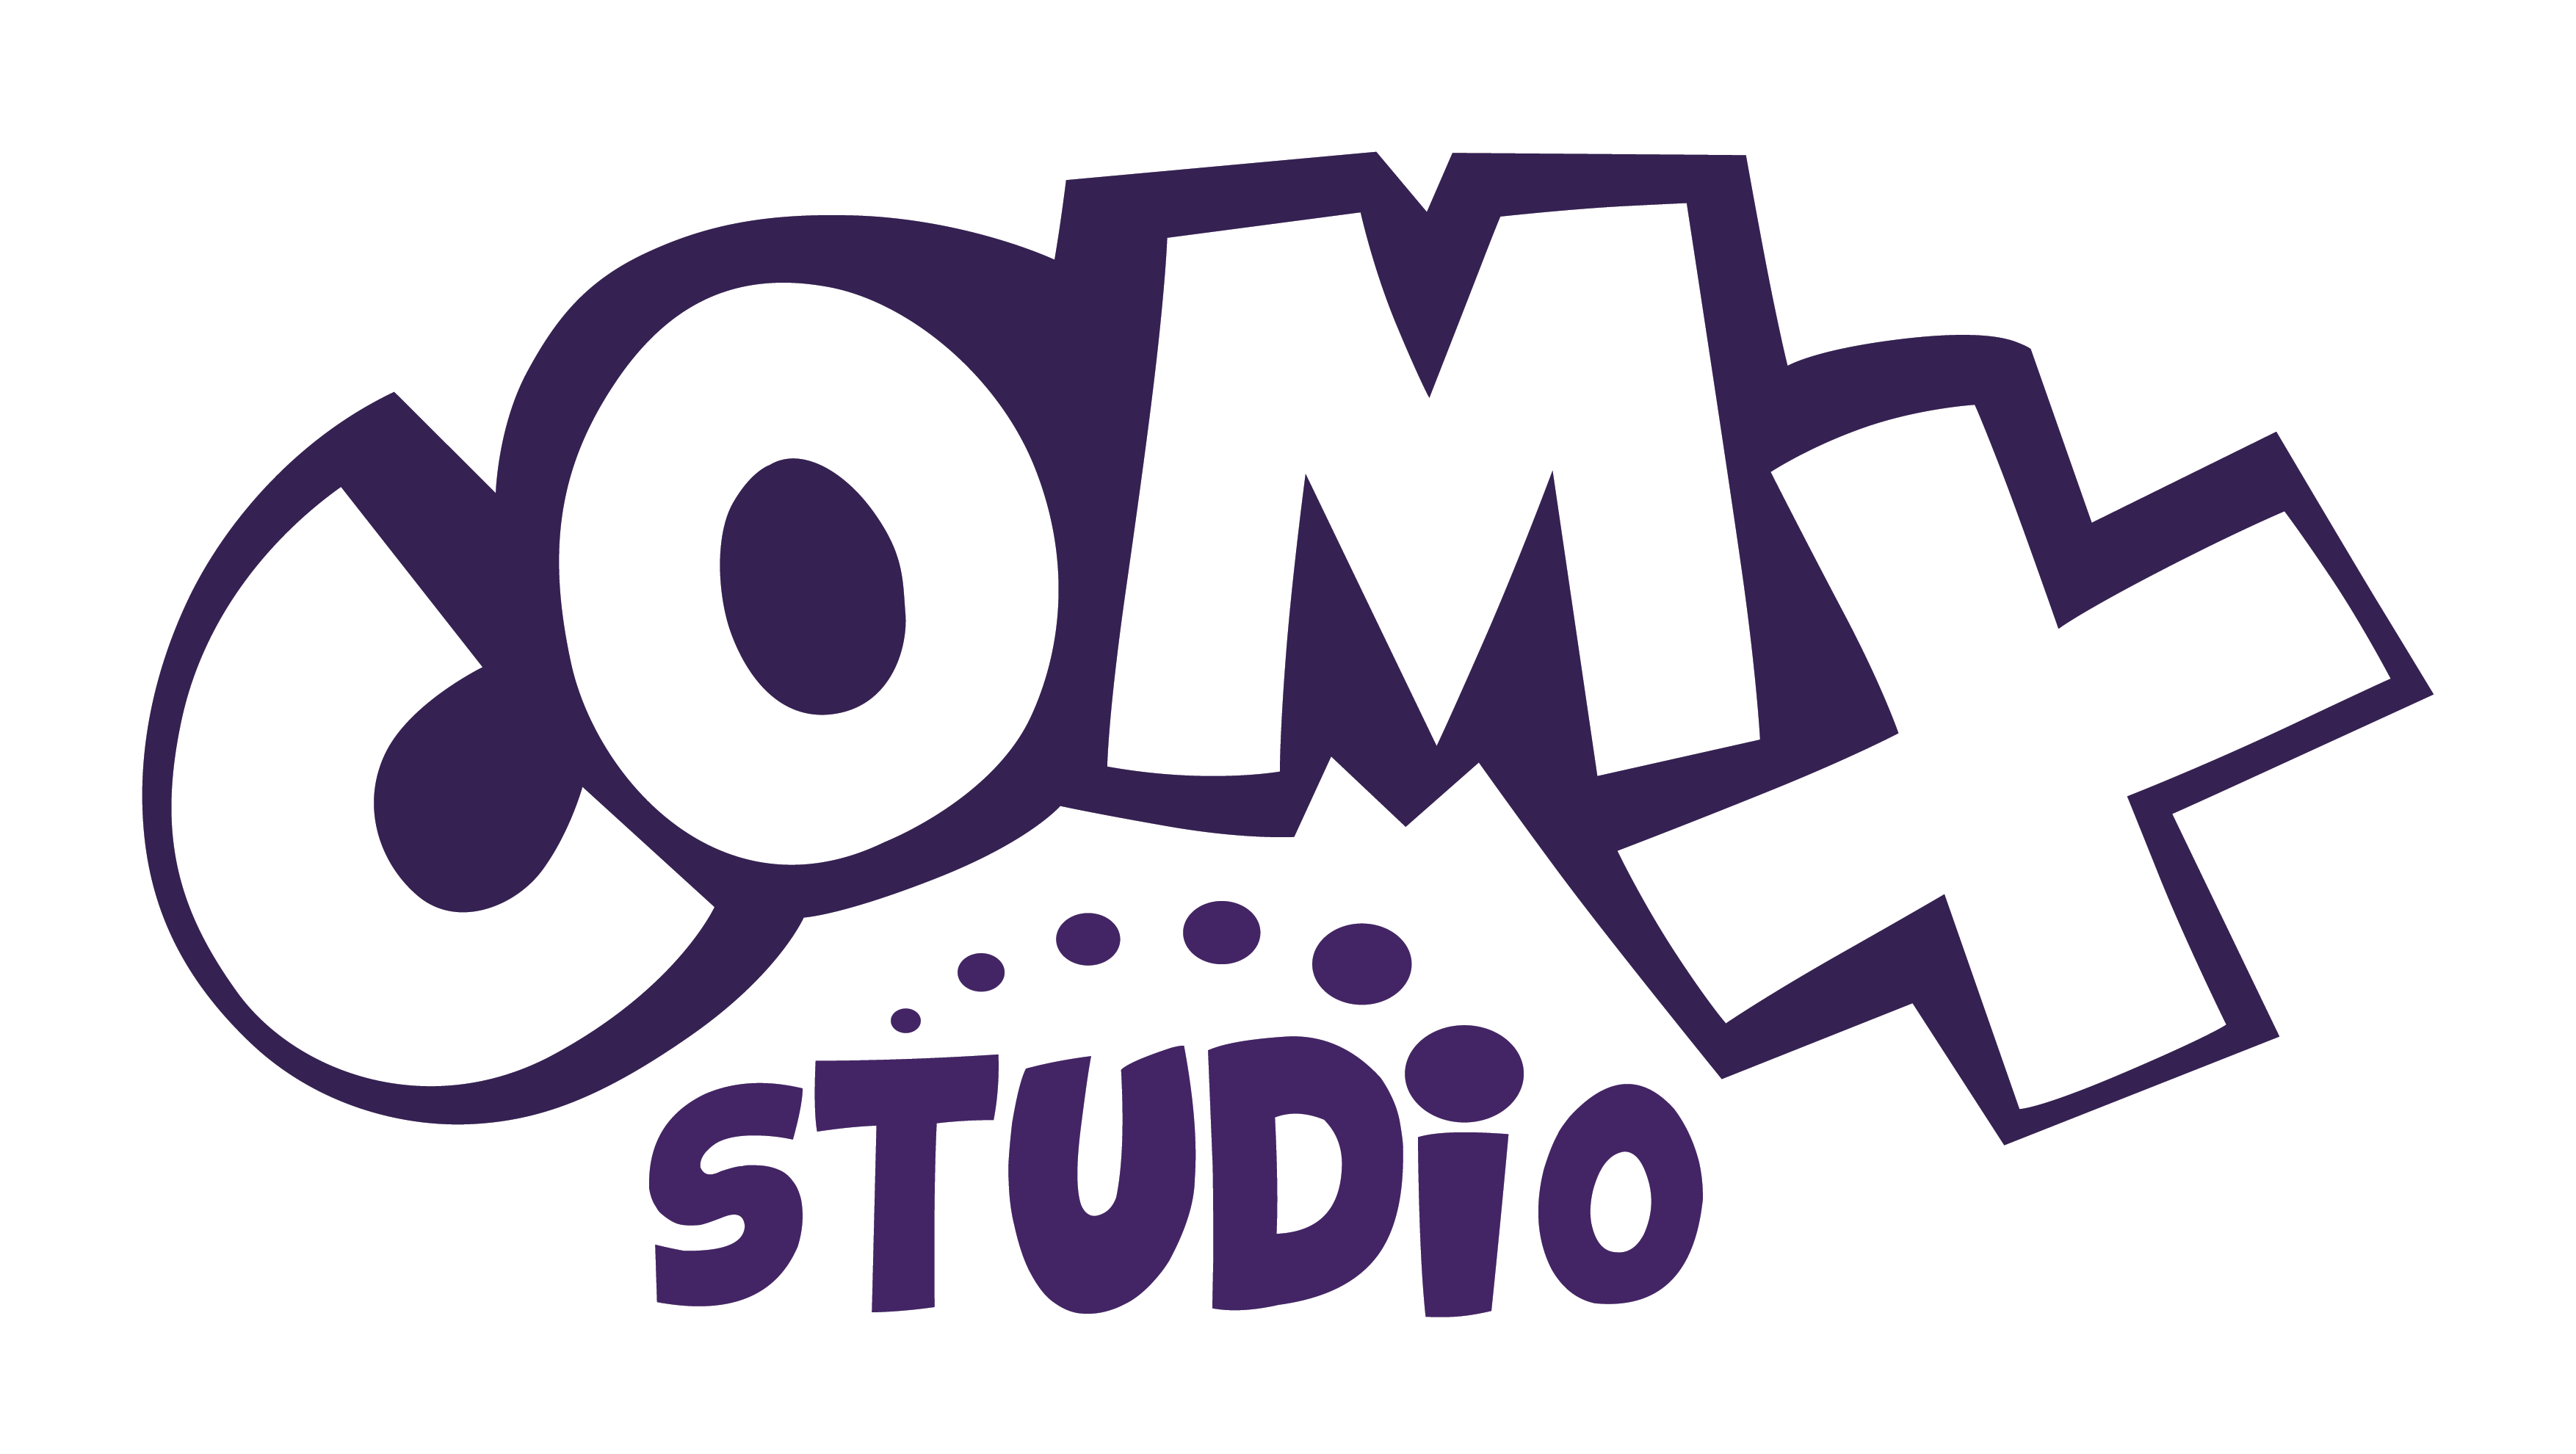 CoX Studio logo